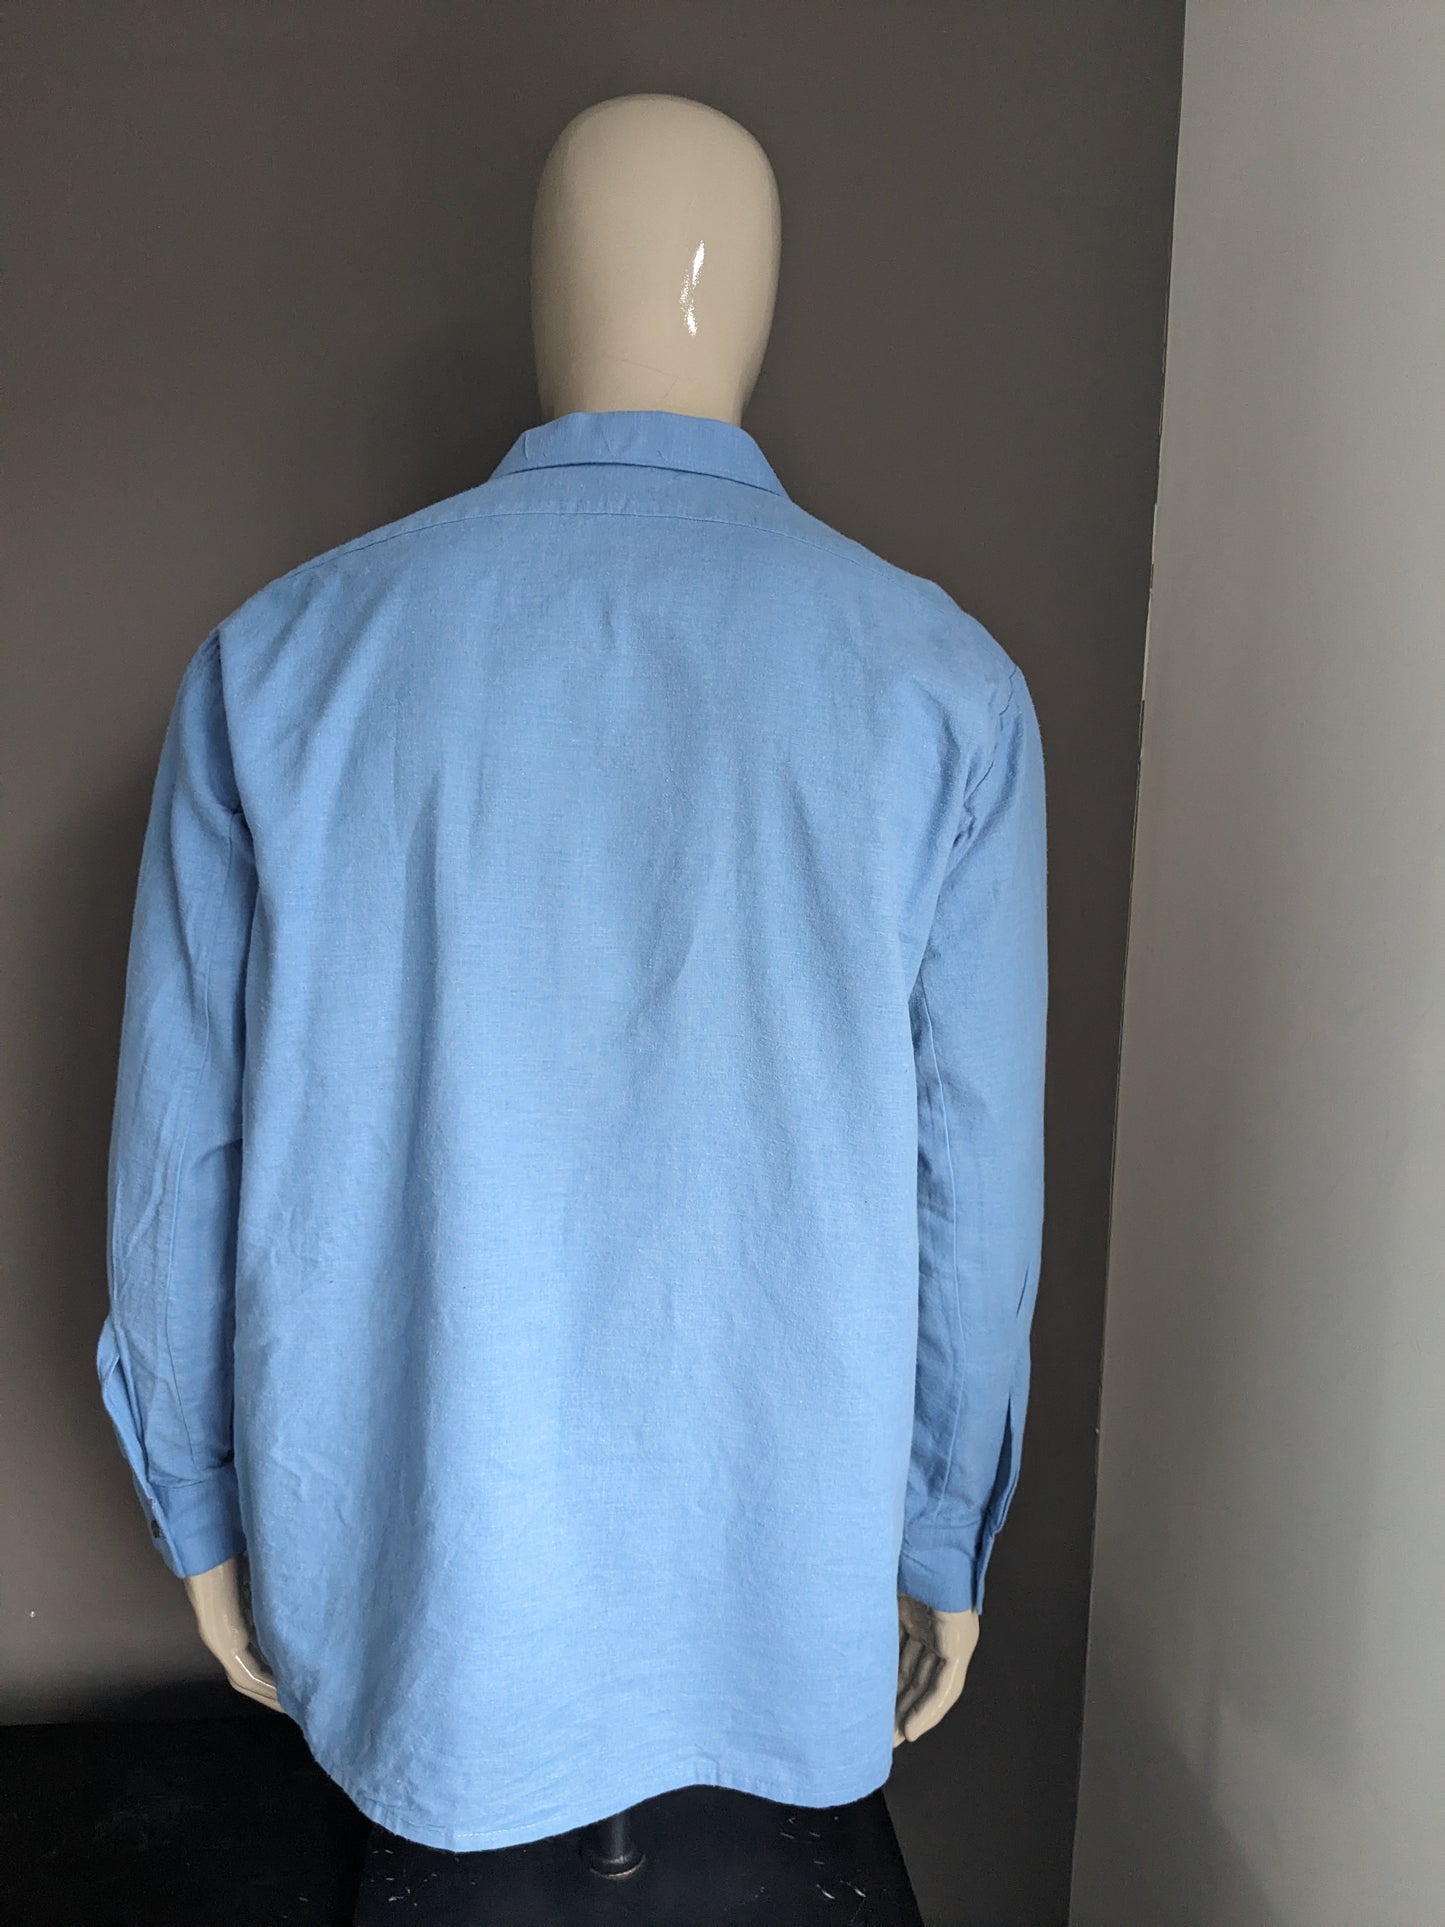 Chemise vintage des années 70 avec collier ponctuel. Couleur bleue. Taille 2xl / xxl.